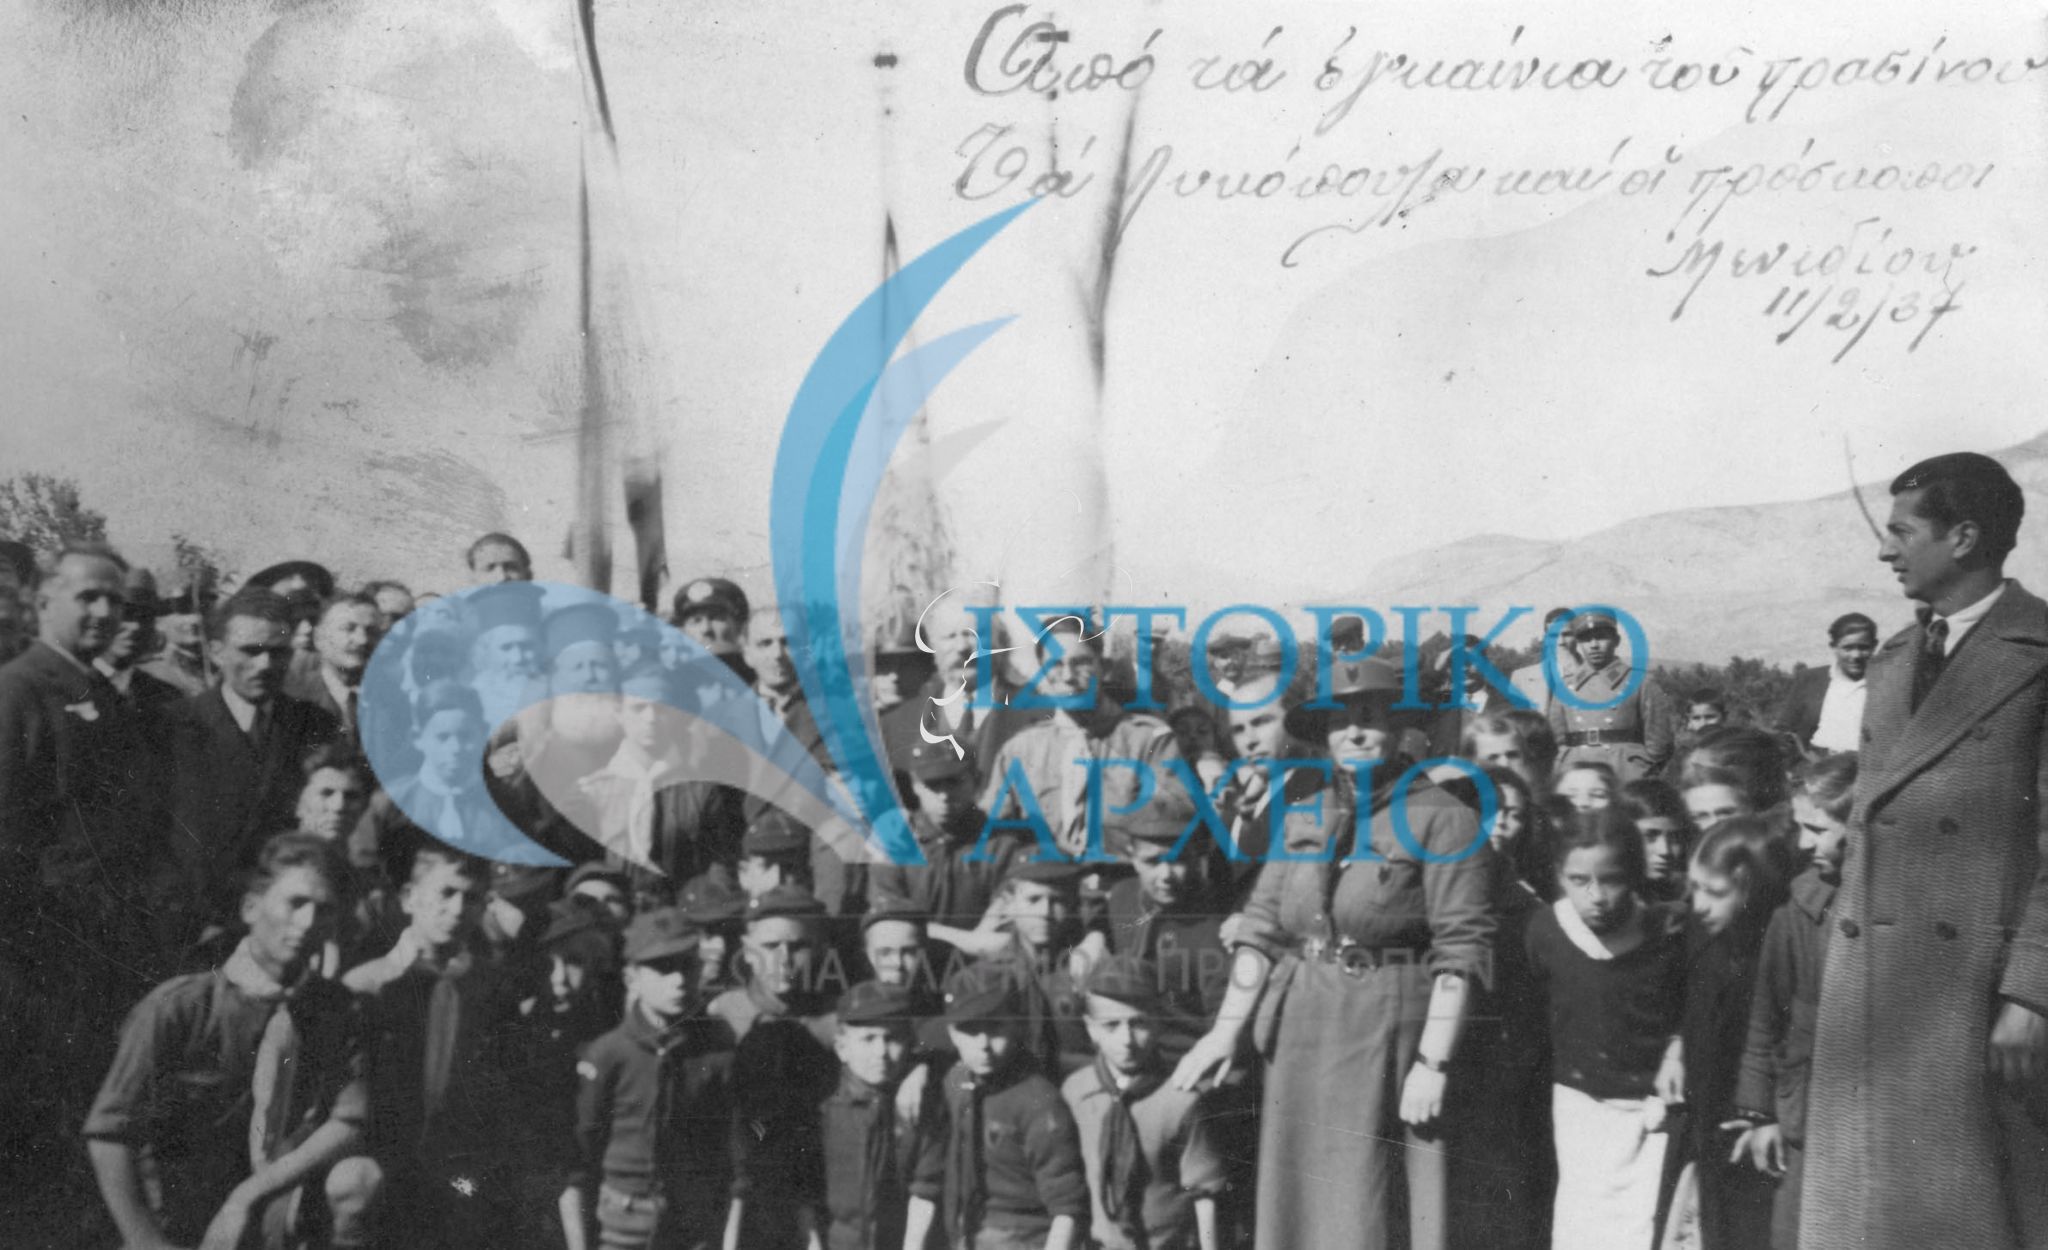 Η πρώτη ελληνίδα γυναίκα βαθμοφόρος κ. Καλογράνη με λυκόπουλα και προσκόπους των Αχαρνών (Μενιδίου) σε εκδήλωση εγκαινίων χώρου πρασίνου τον Φεβρουάριο του 1937.